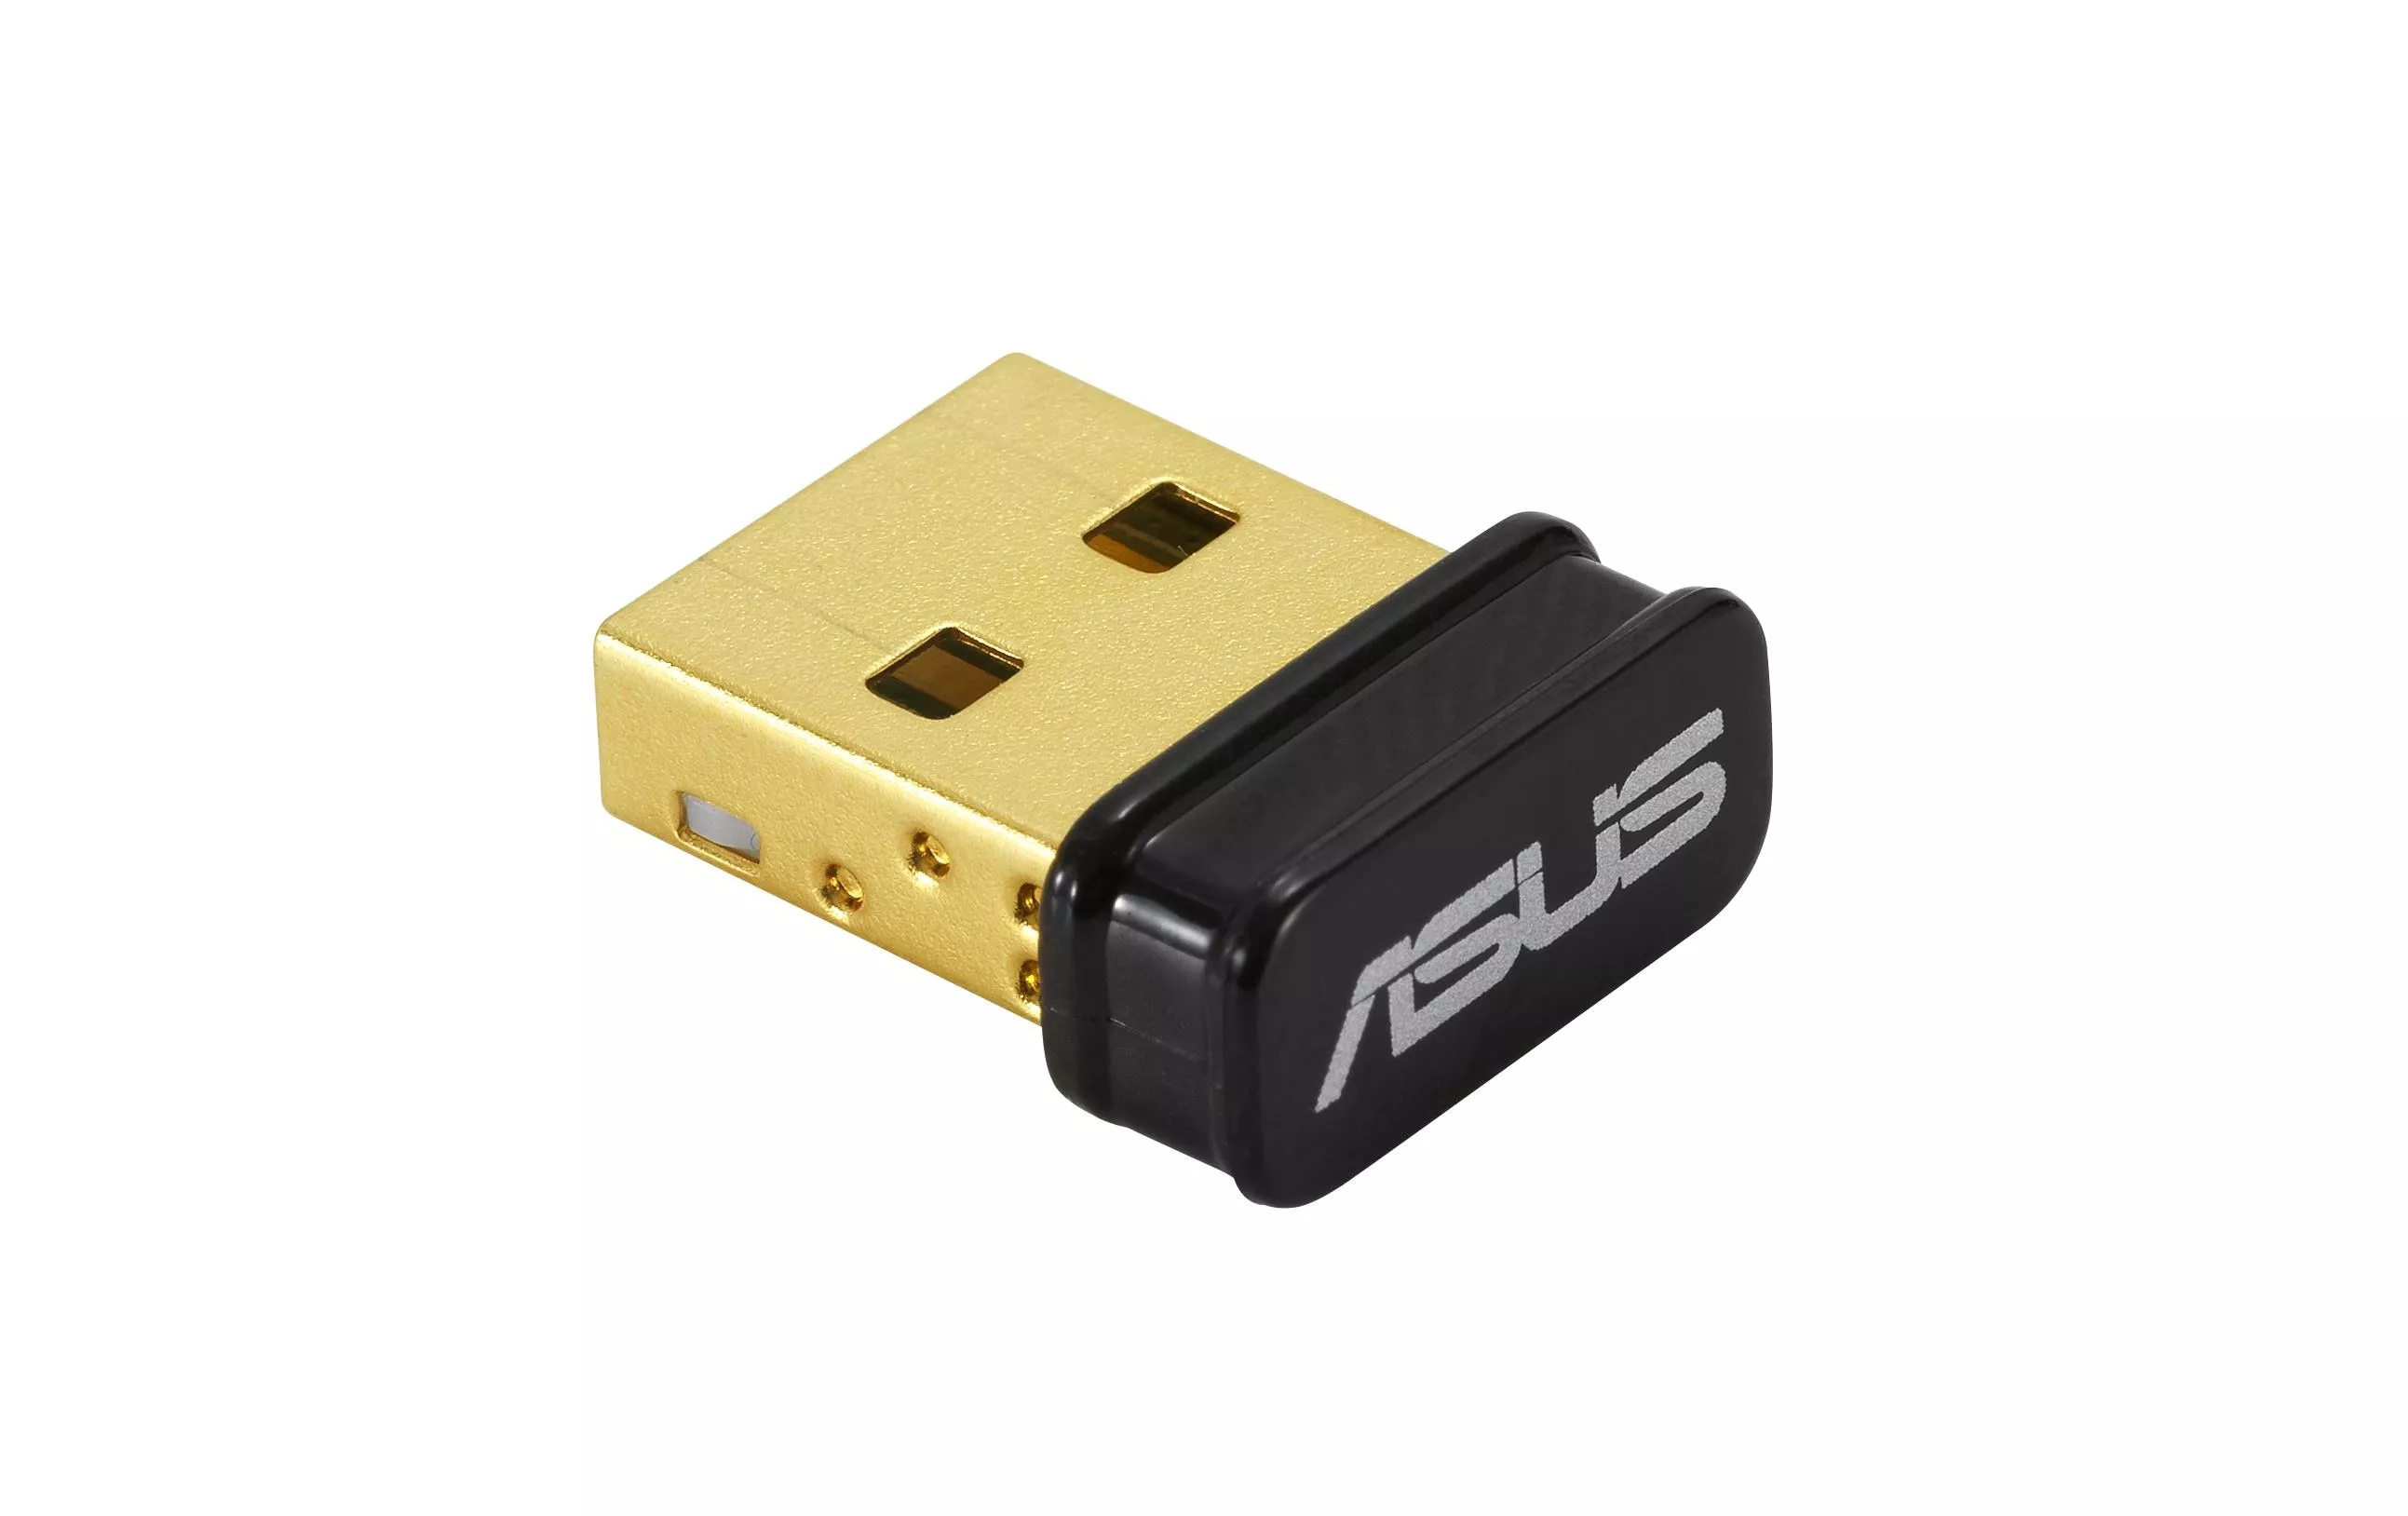 WLAN-N chiavetta USB USB-N10 NANO V2